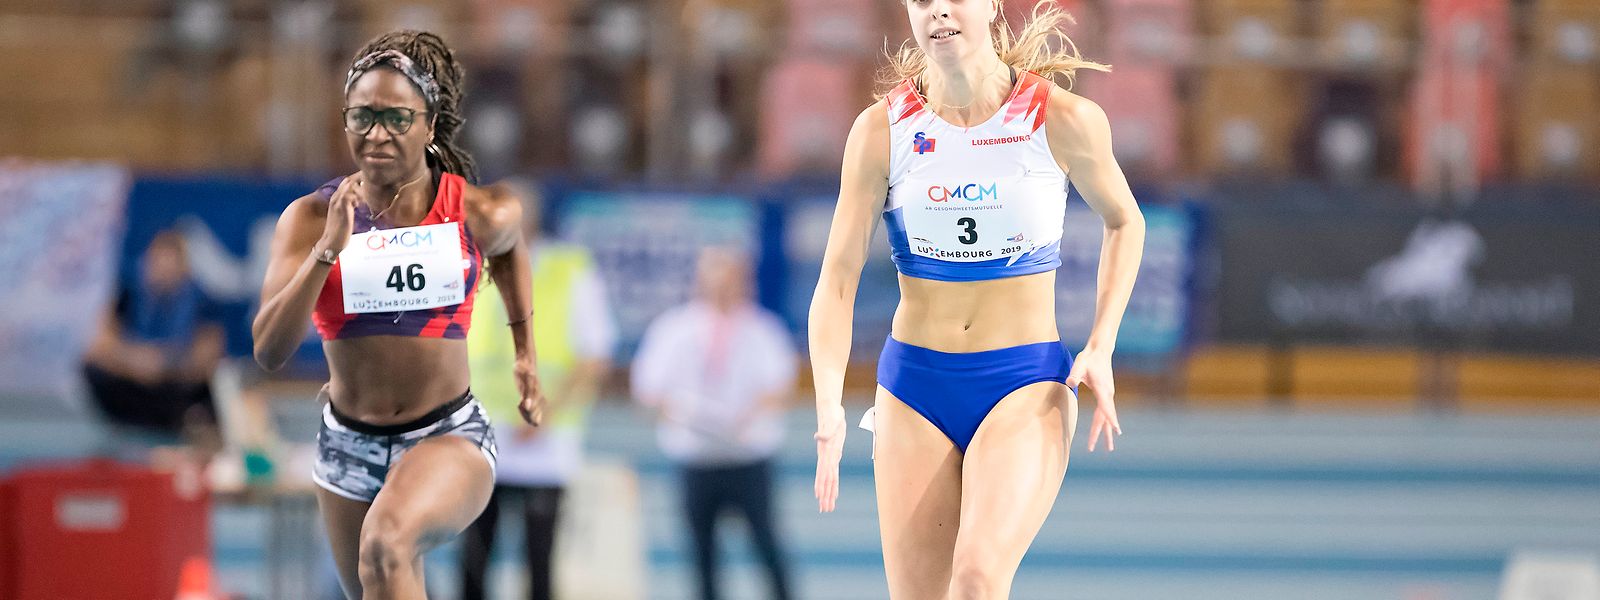 Patrizia van der Weken läuft am Sonntag in der Coque einen neuen Landesrekord über 60 m.